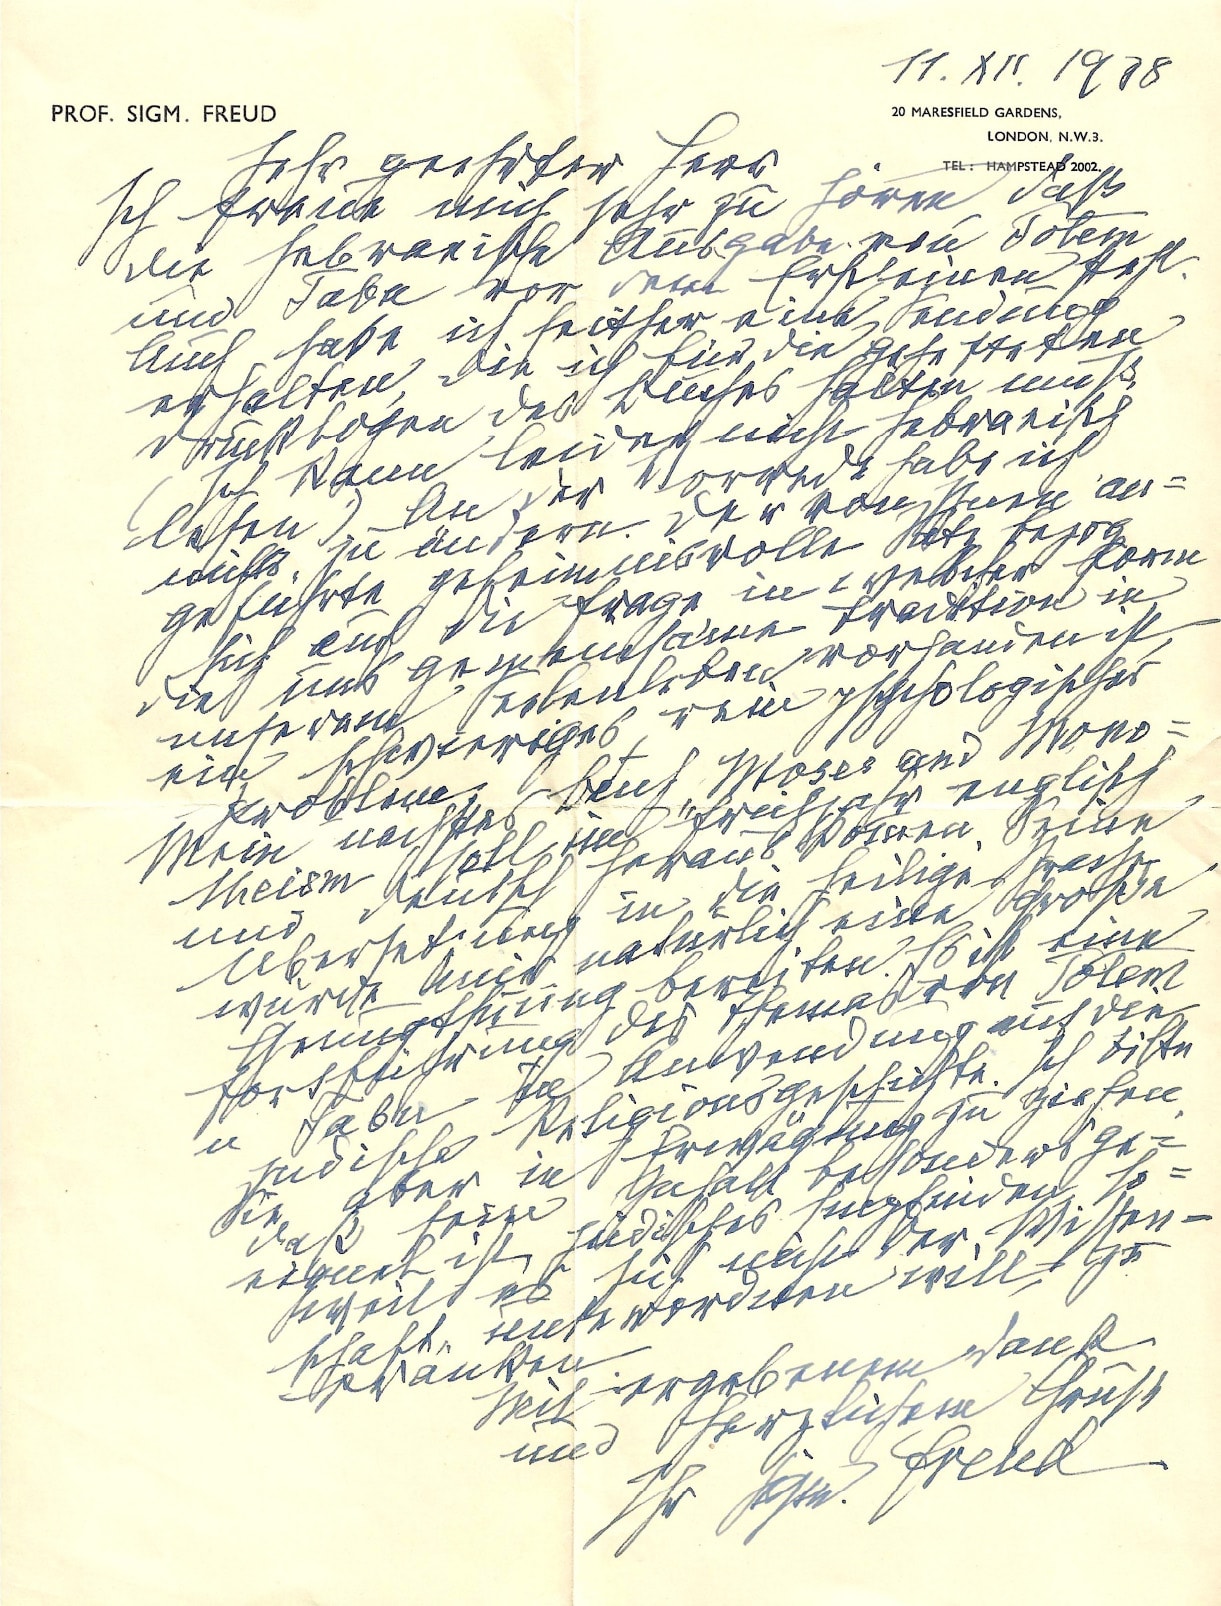 מכתבו של זיגמונד פרויד אל יהודה דביר ב-1938 (צילום: באדיבות המשפחה)